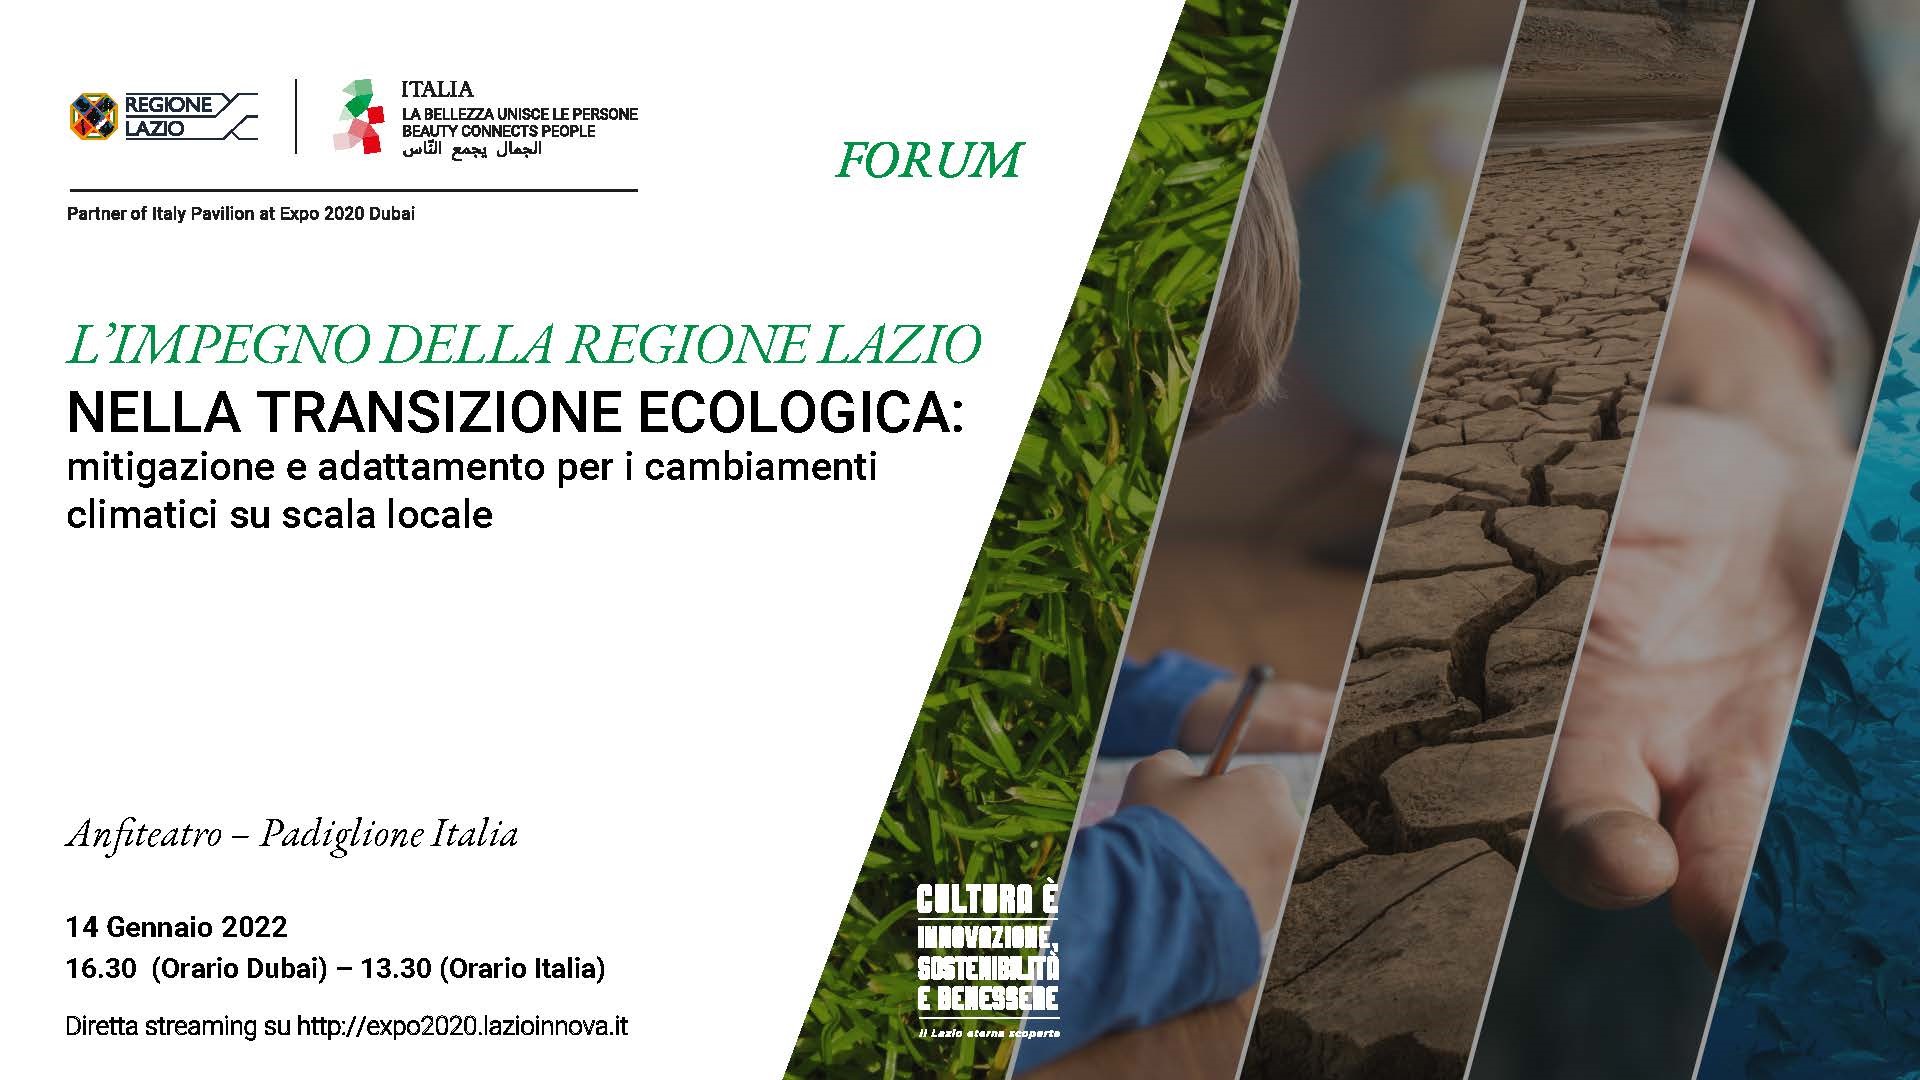 Forum – “L’impegno della Regione Lazio nella transizione ecologica: mitigazione e adattamento per i cambiamenti climatici su scala locale”